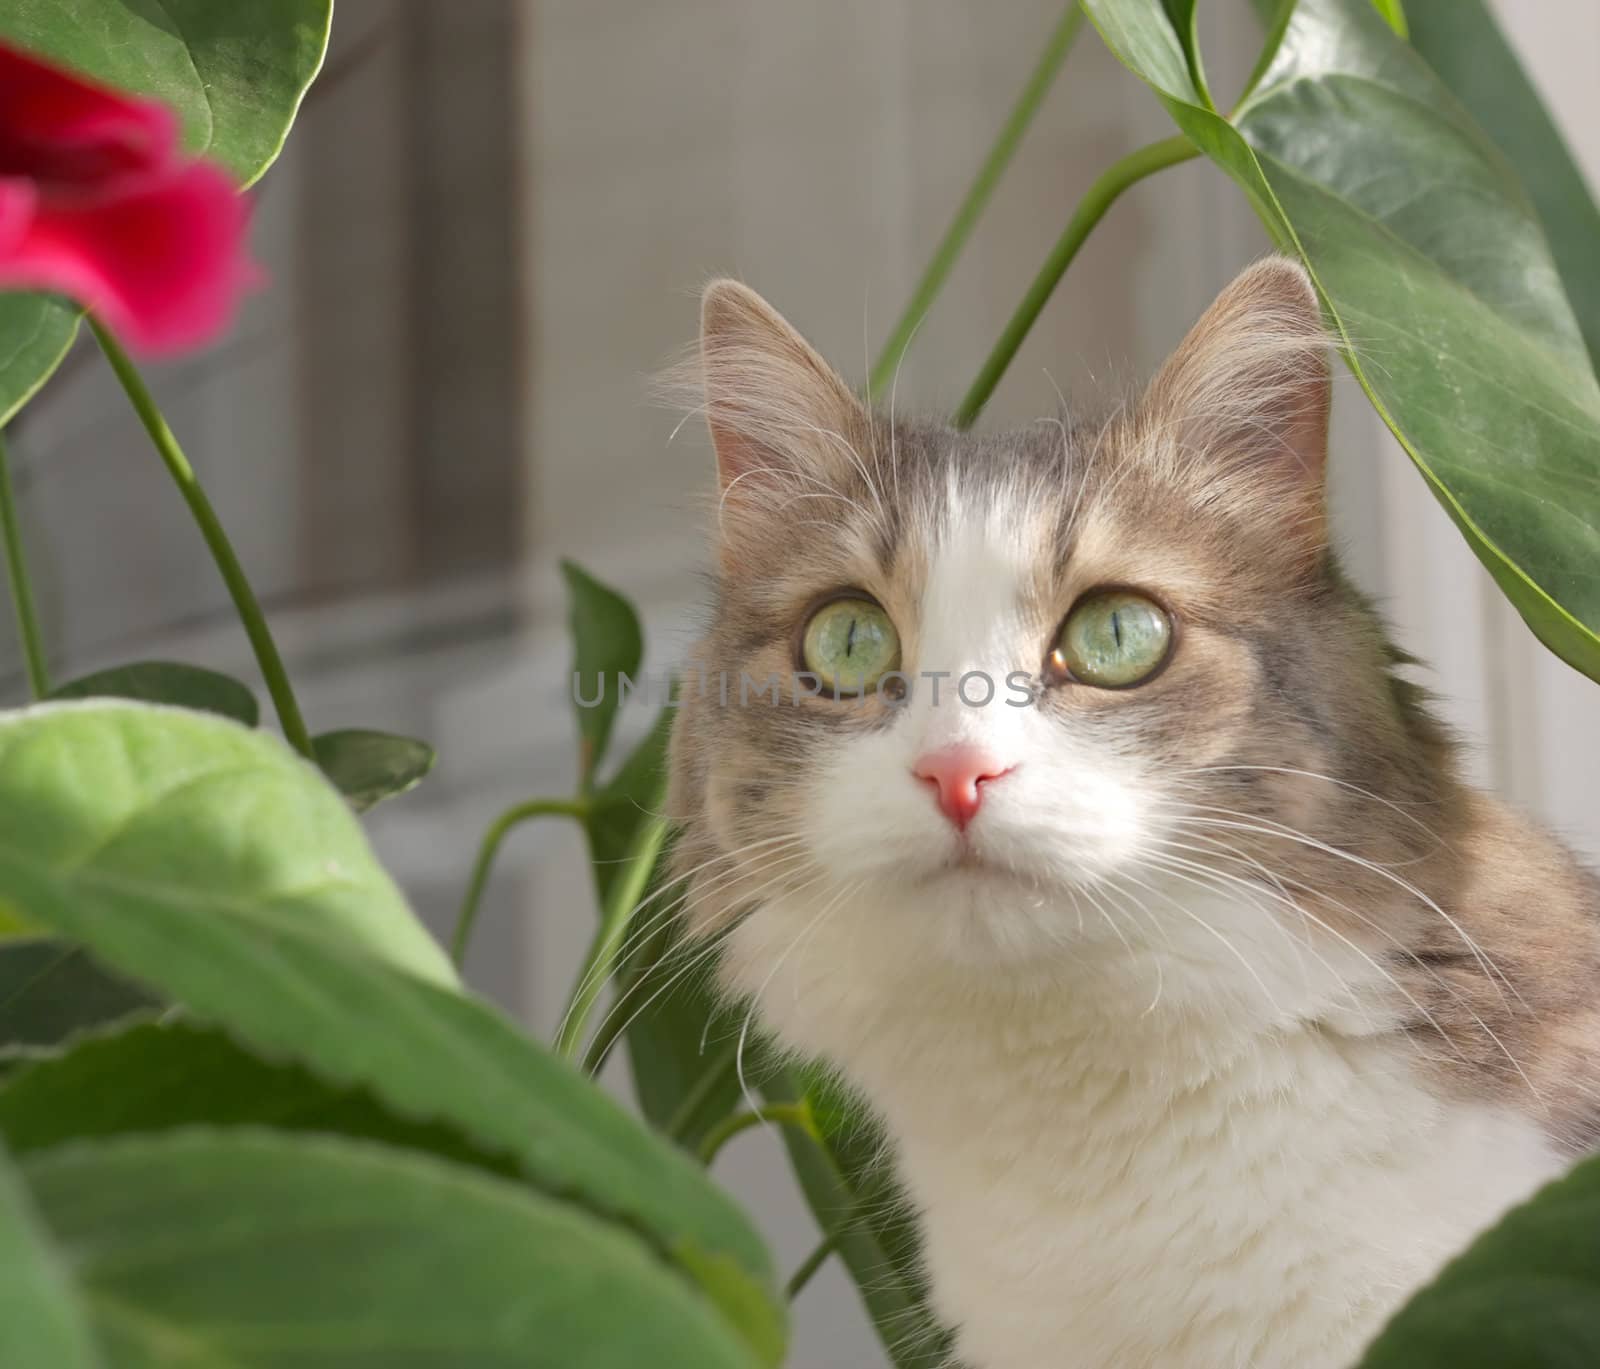 Cat near leaves of flower. Shallow DOF.